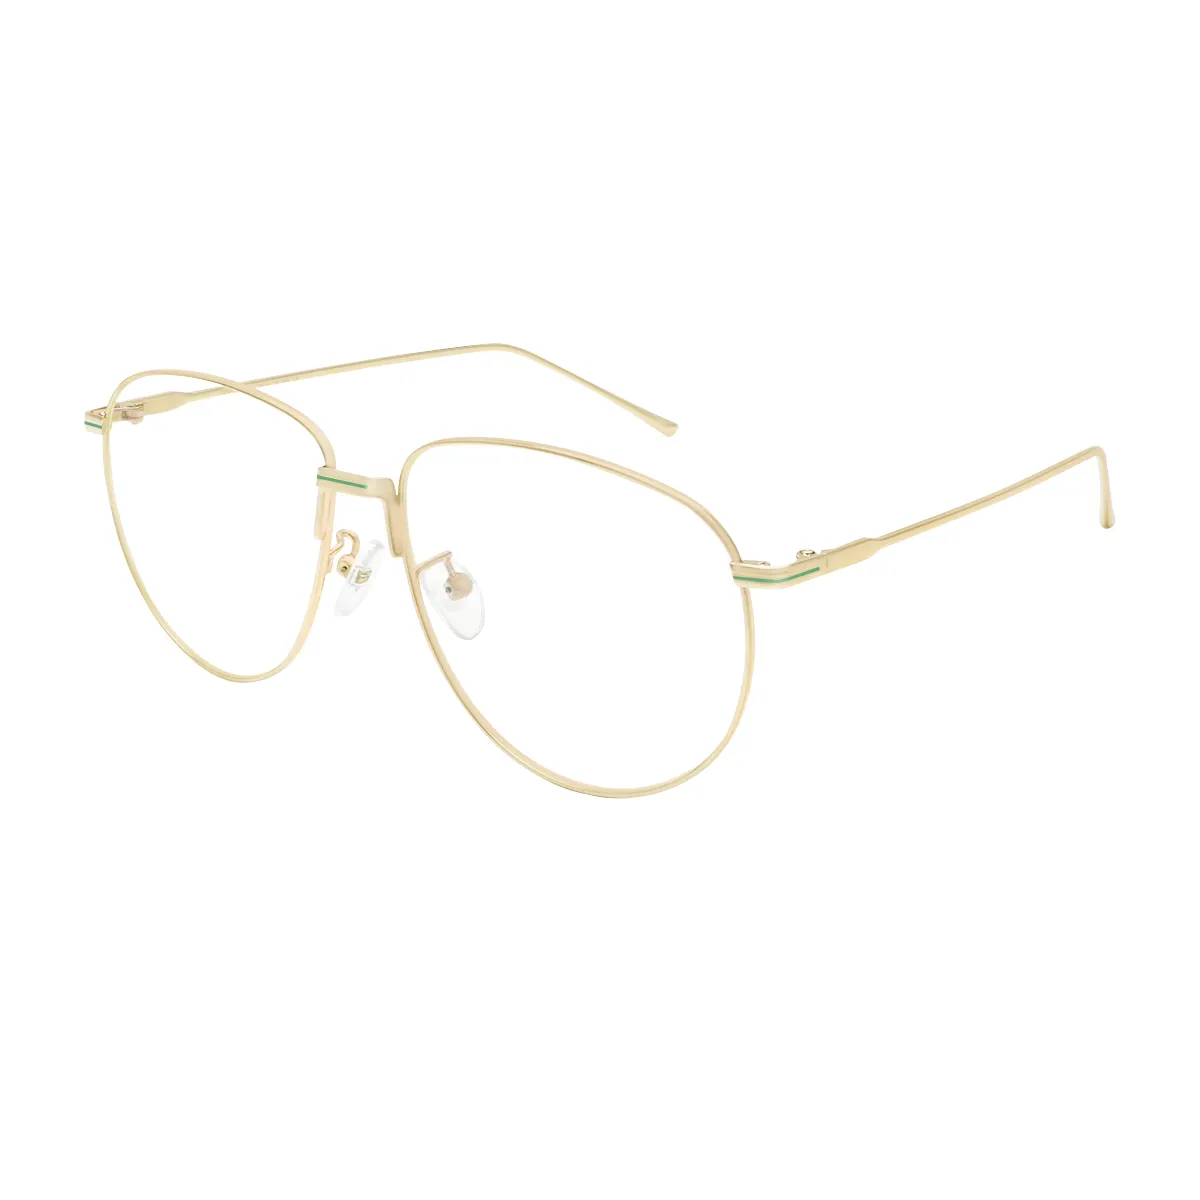 Anthony - Aviator Gold Glasses for Men